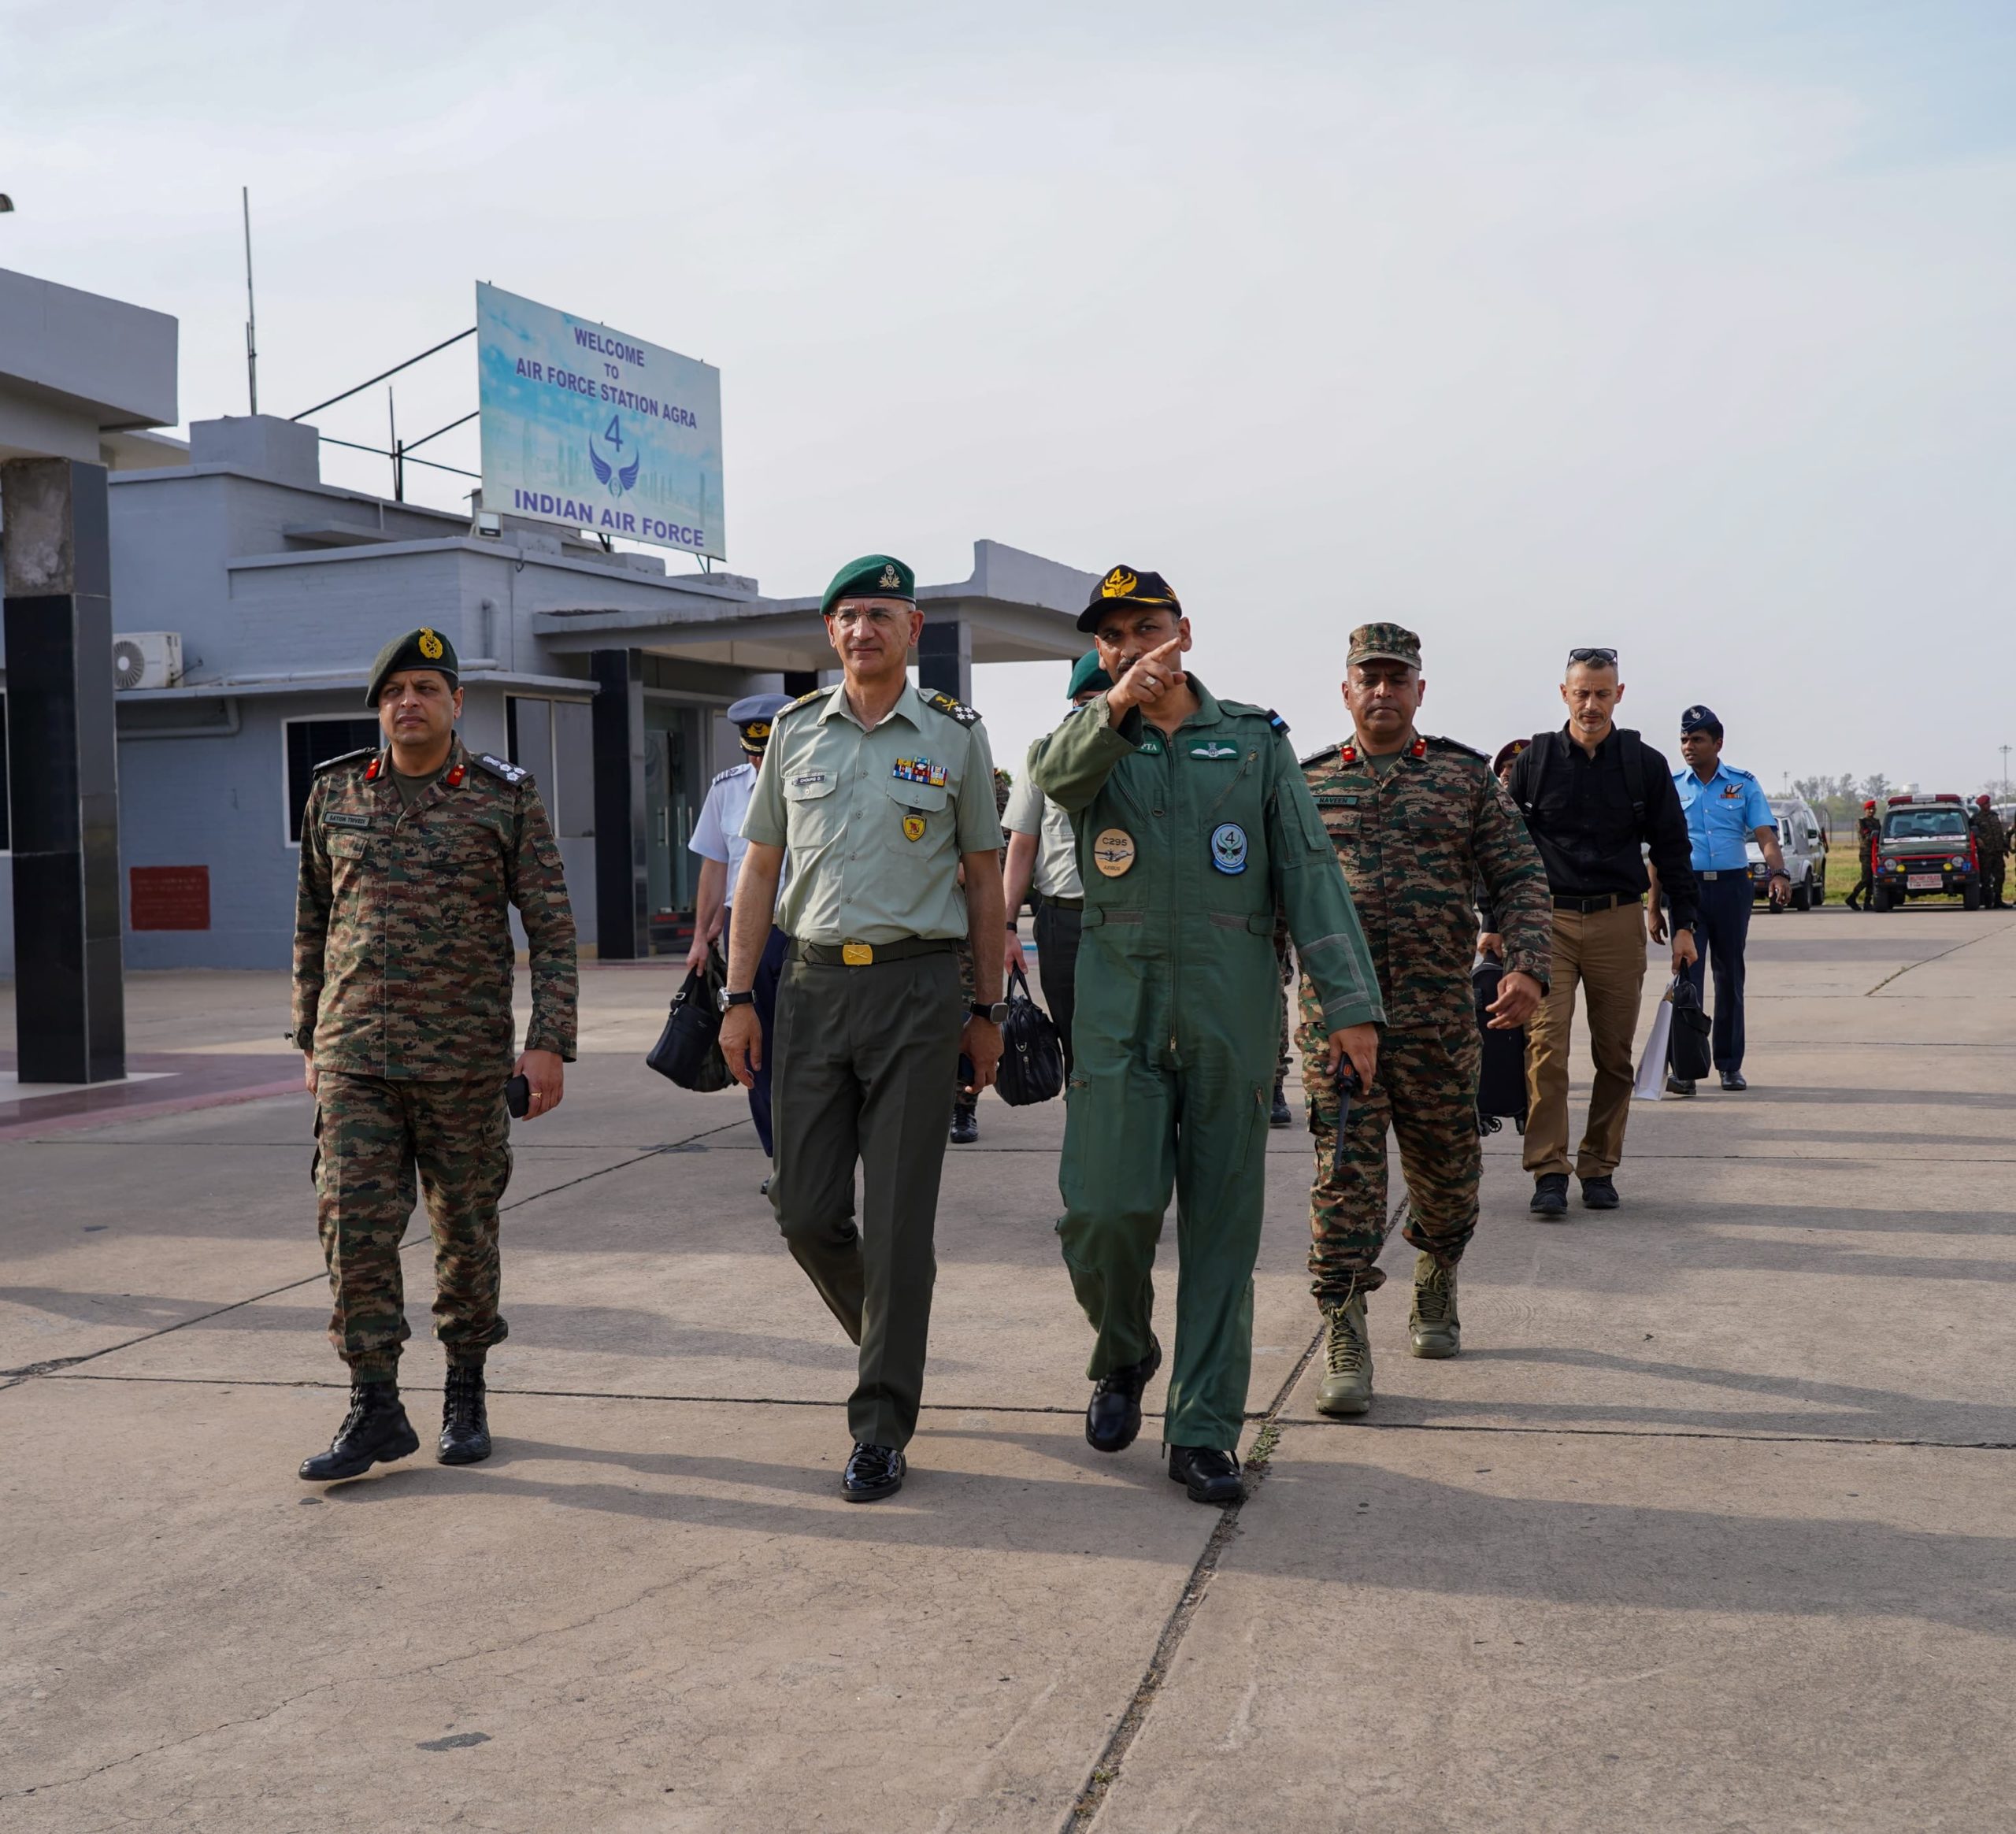 Αρχηγός ΓΕΕΘΑ για τη Στρατιωτική Συνεργασία με την Ινδία: Με έχουν εντυπωσιάσει οι ικανότητές της – Δείτε εικόνες